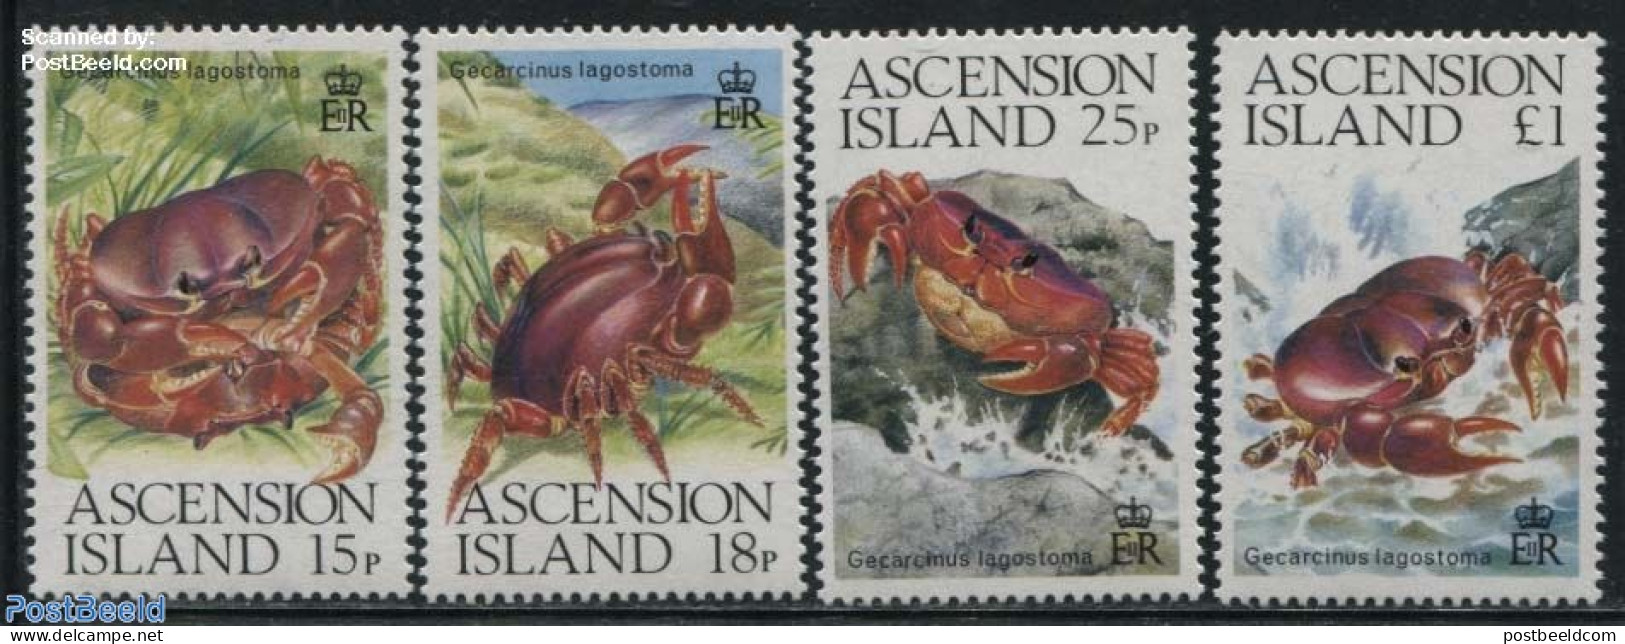 Ascension 1989 Crabs 4v, Mint NH, Nature - Shells & Crustaceans - Crabs And Lobsters - Vita Acquatica